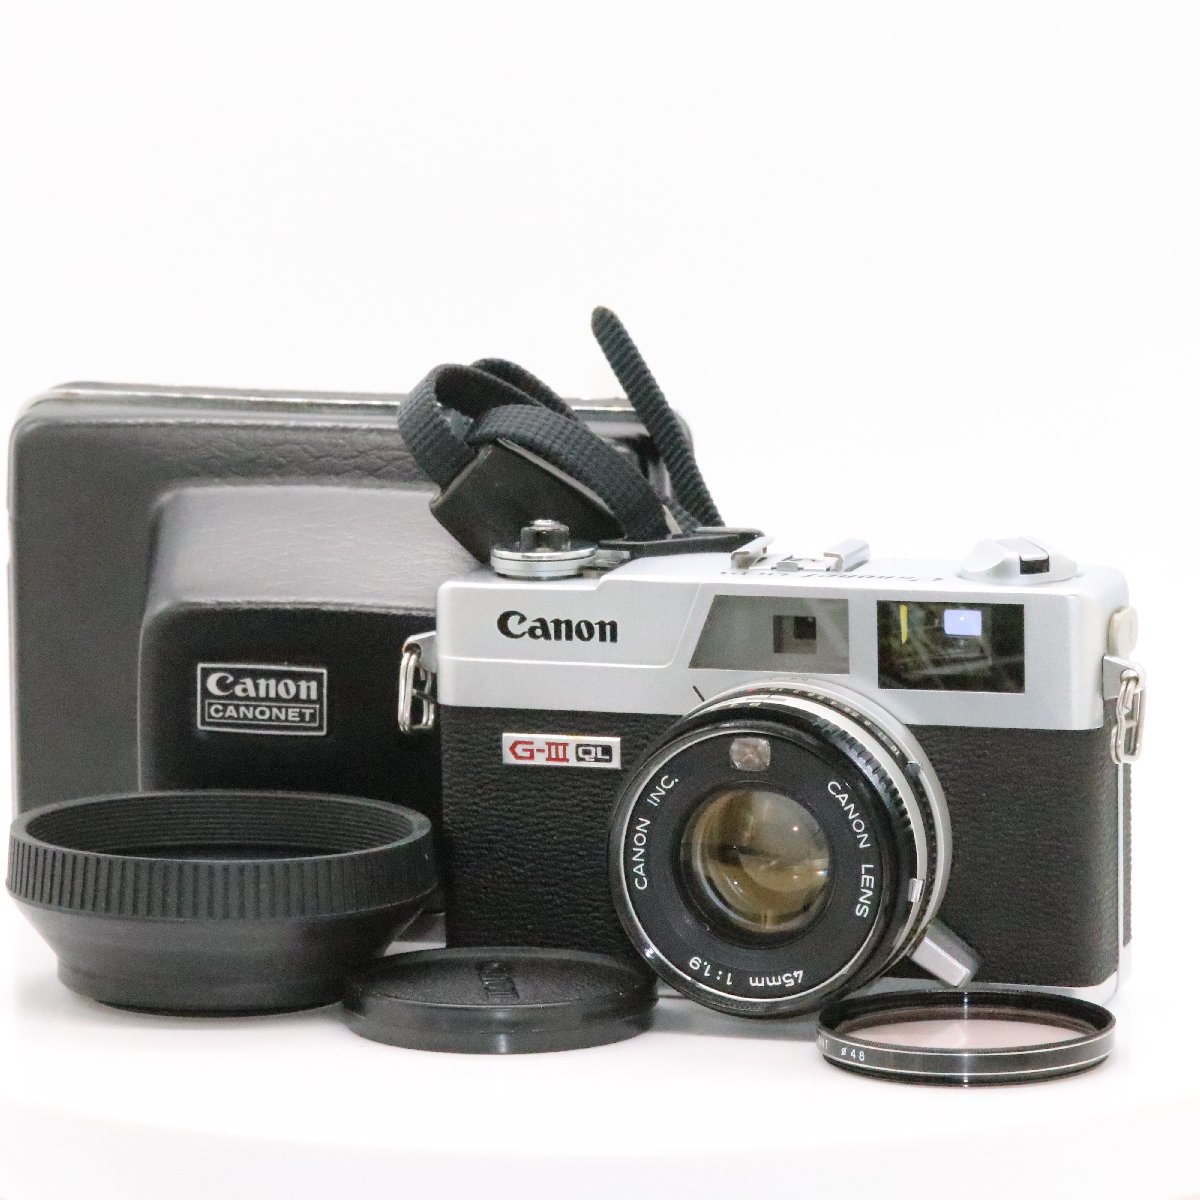 2022年ファッション福袋 美品 CANON Canonet キャノネット QL19 GIII G-III G3 レンジファインダー フィルムカメラ キヤノン